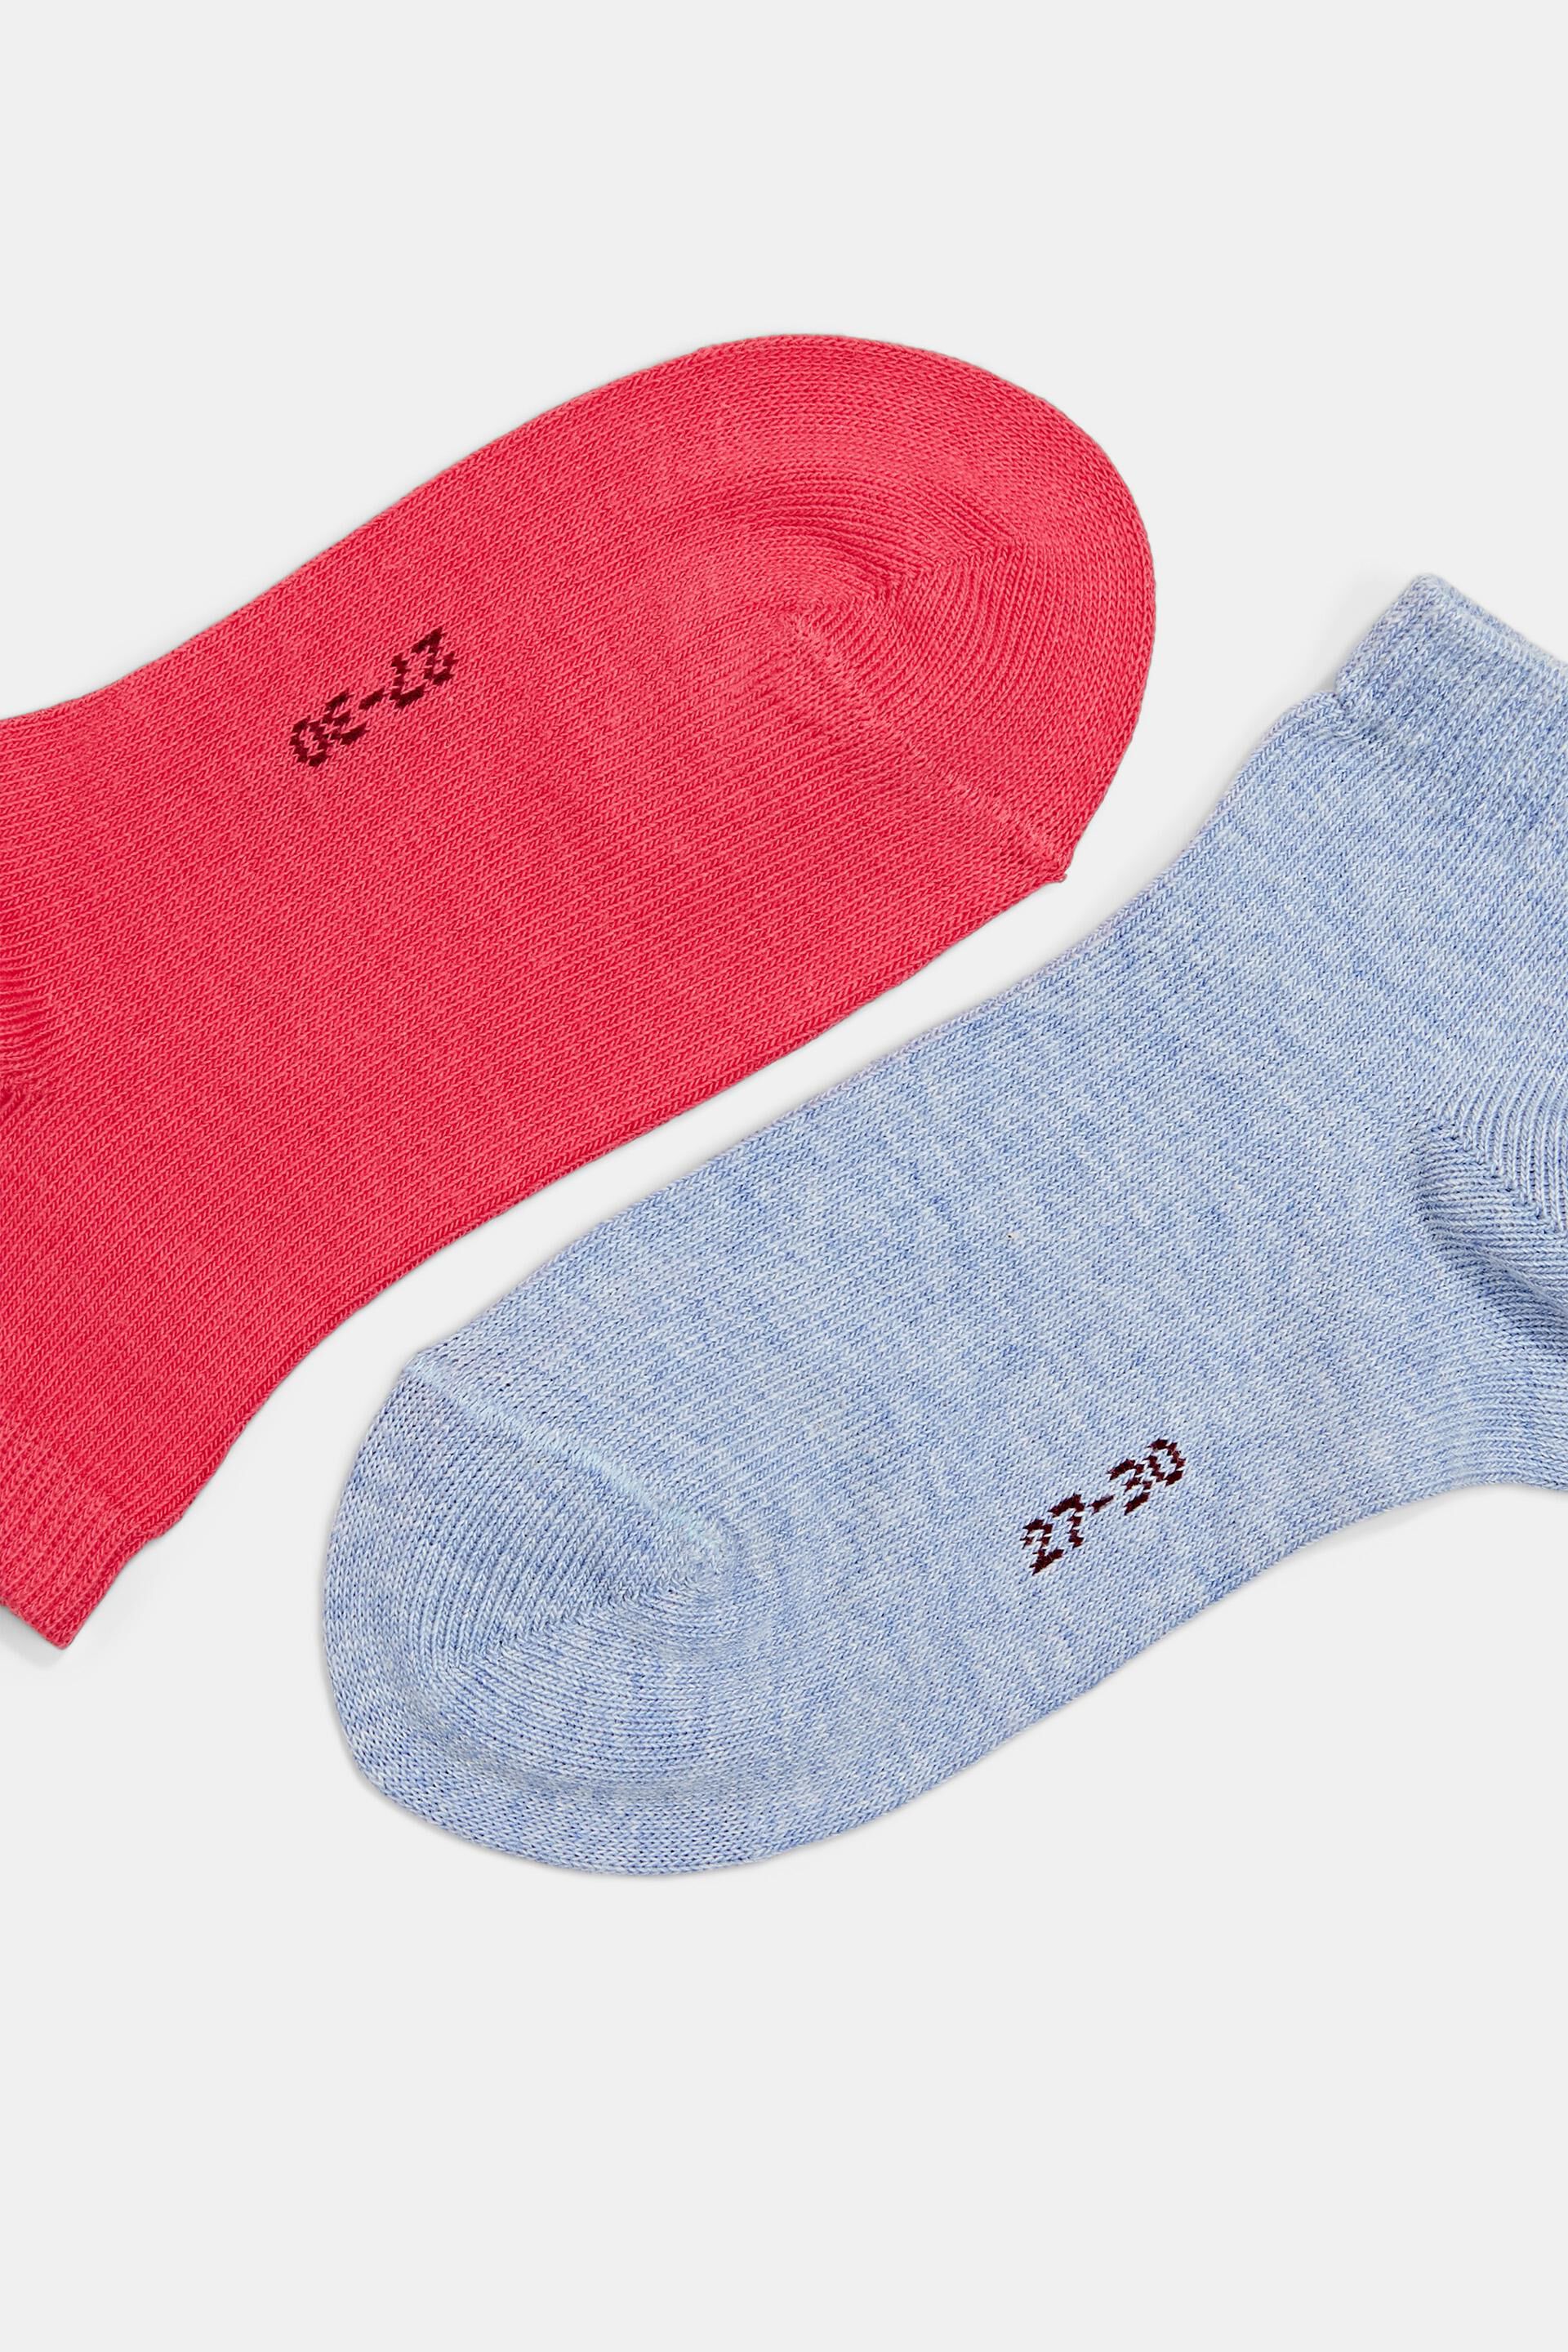 Esprit einfarbigen Packung mit Bio-Baumwollmischung 5 einer aus Socken Paar